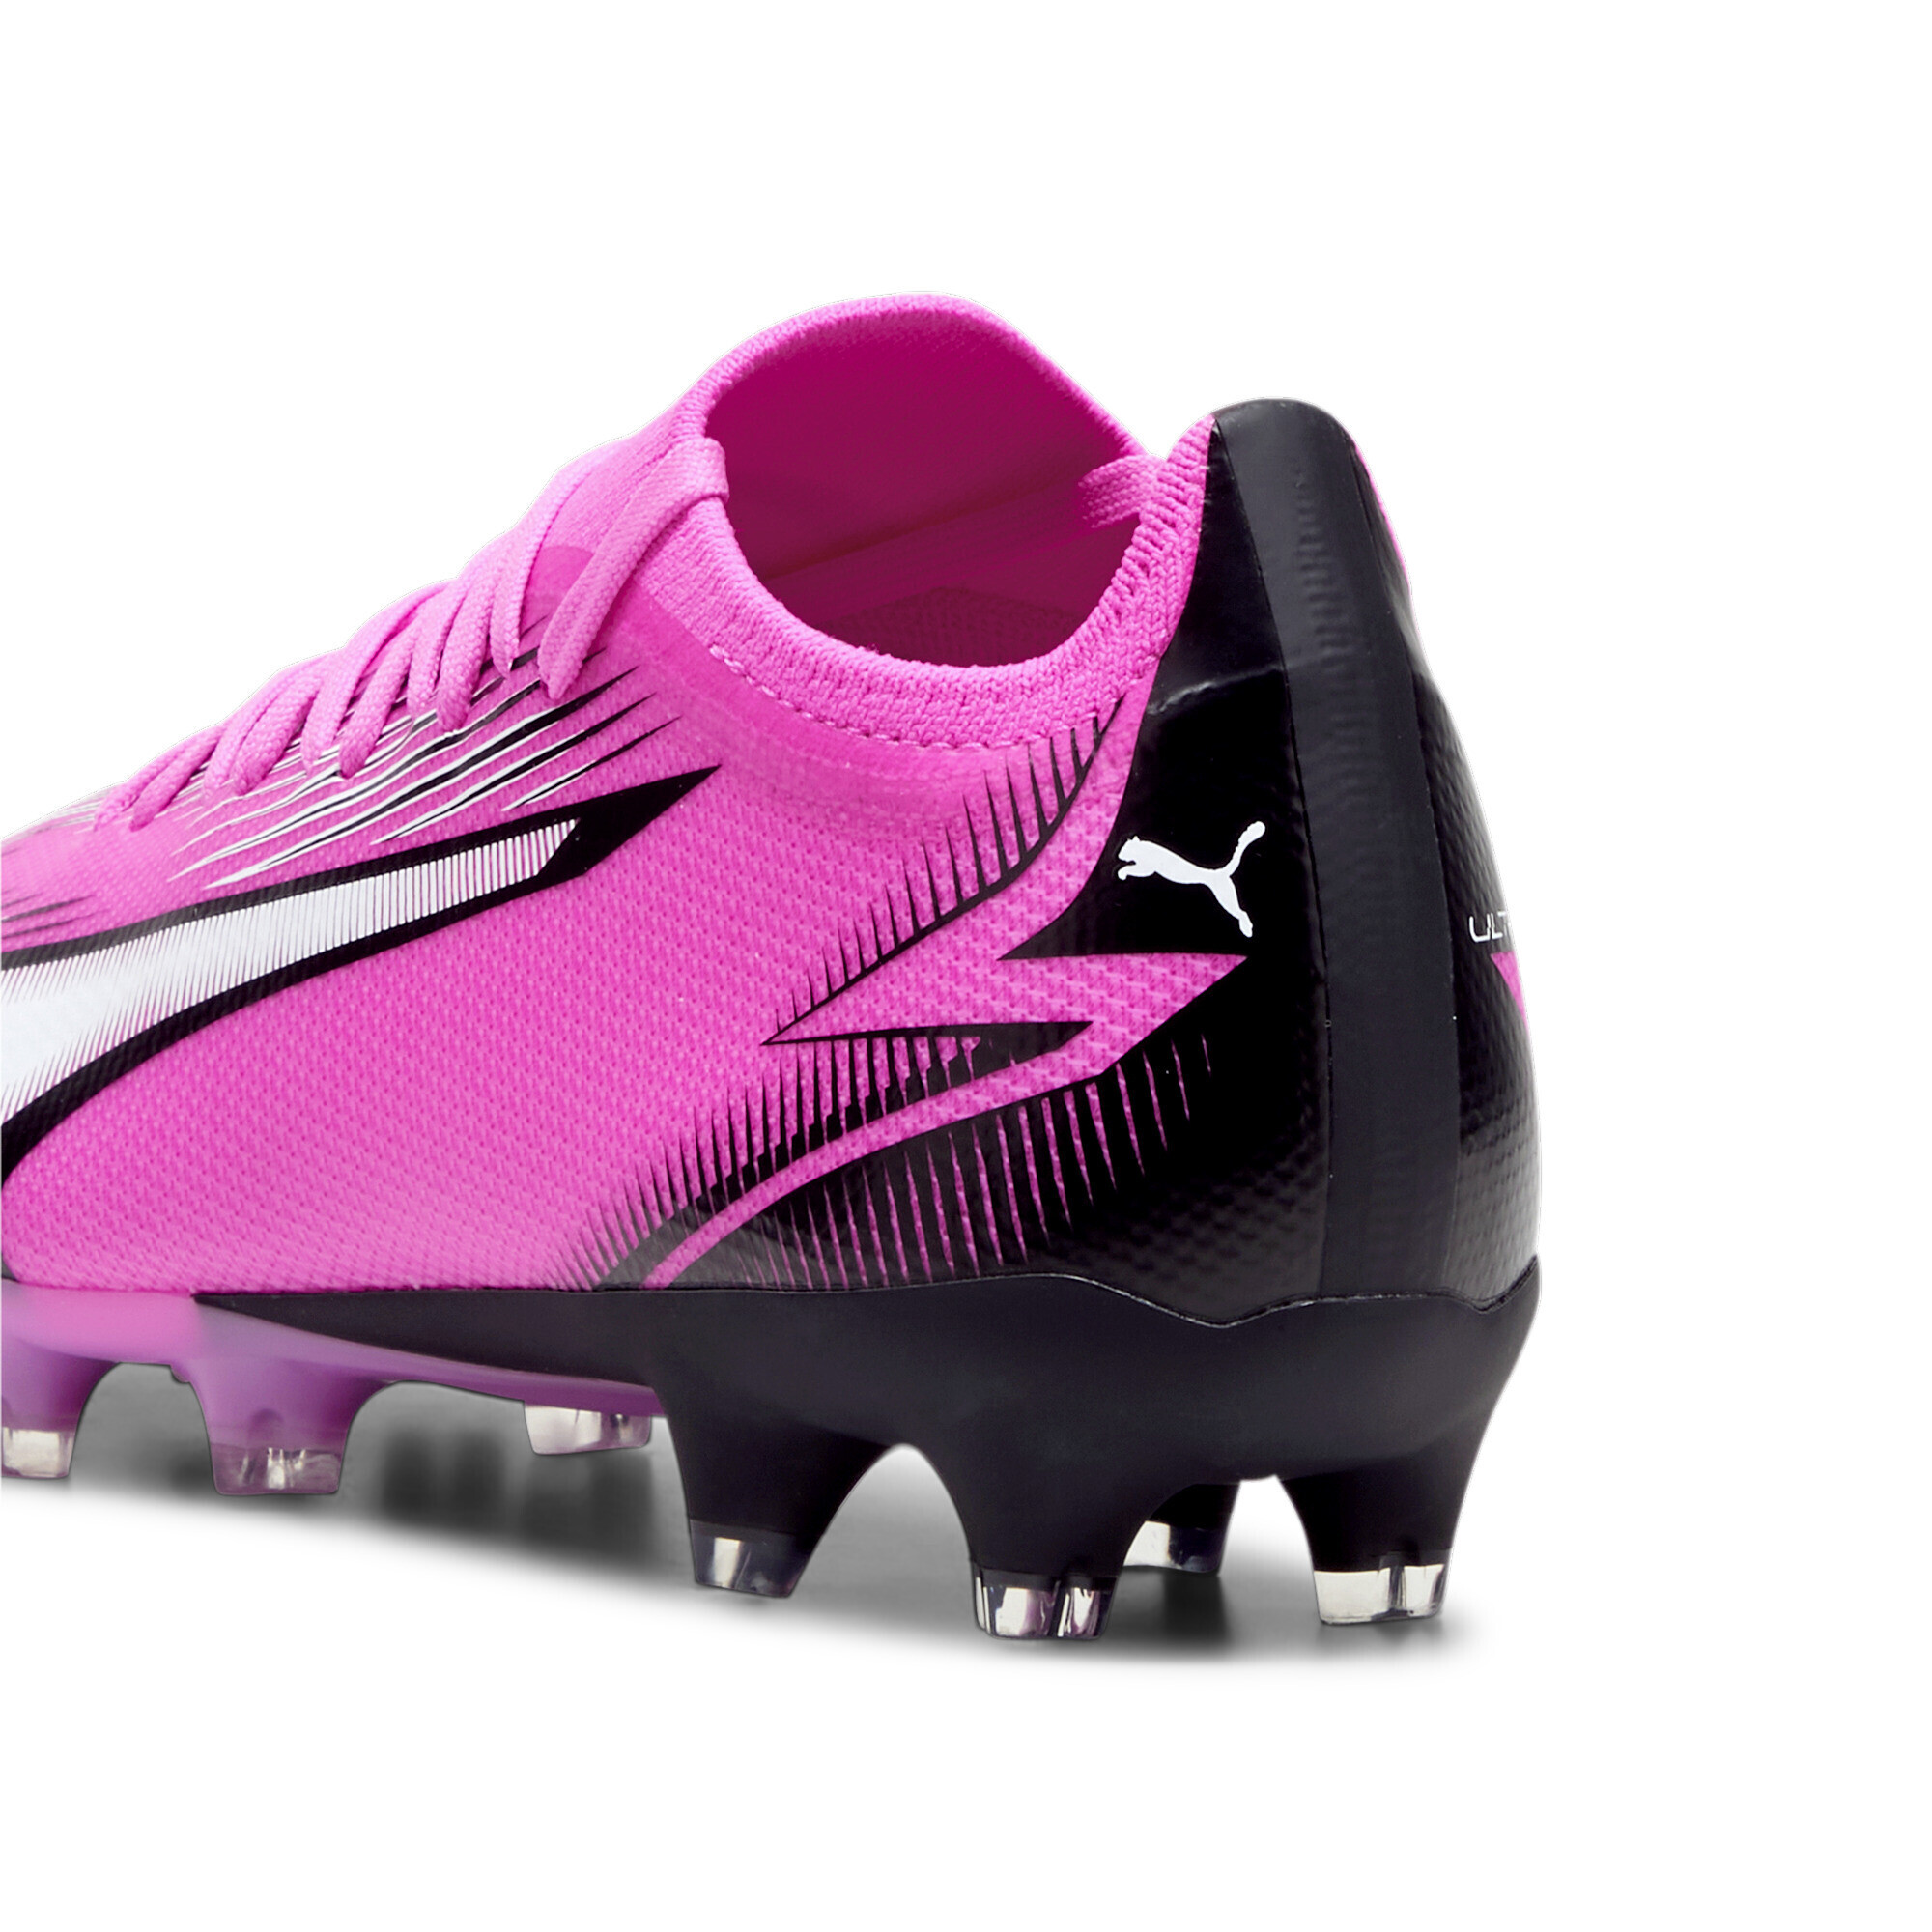 Women's PUMA ULTRA MATCH FG/AG Football Boots In Pink, Size EU 41